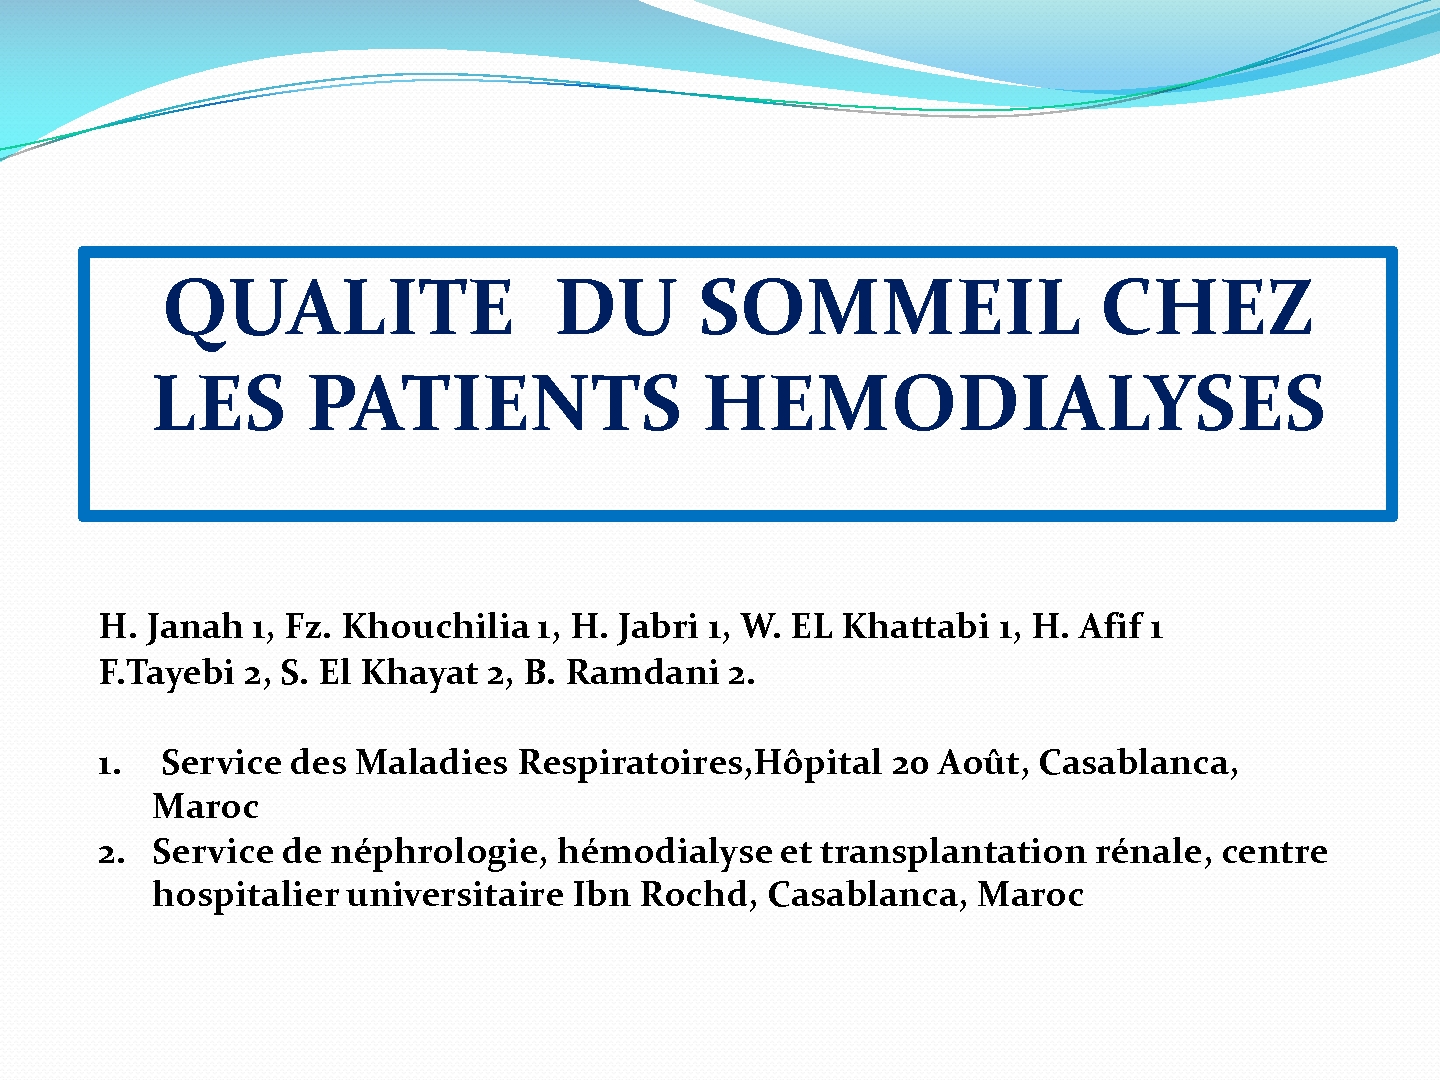 La qualité du sommeil chez les patients hémodialysés. H. JANAH,